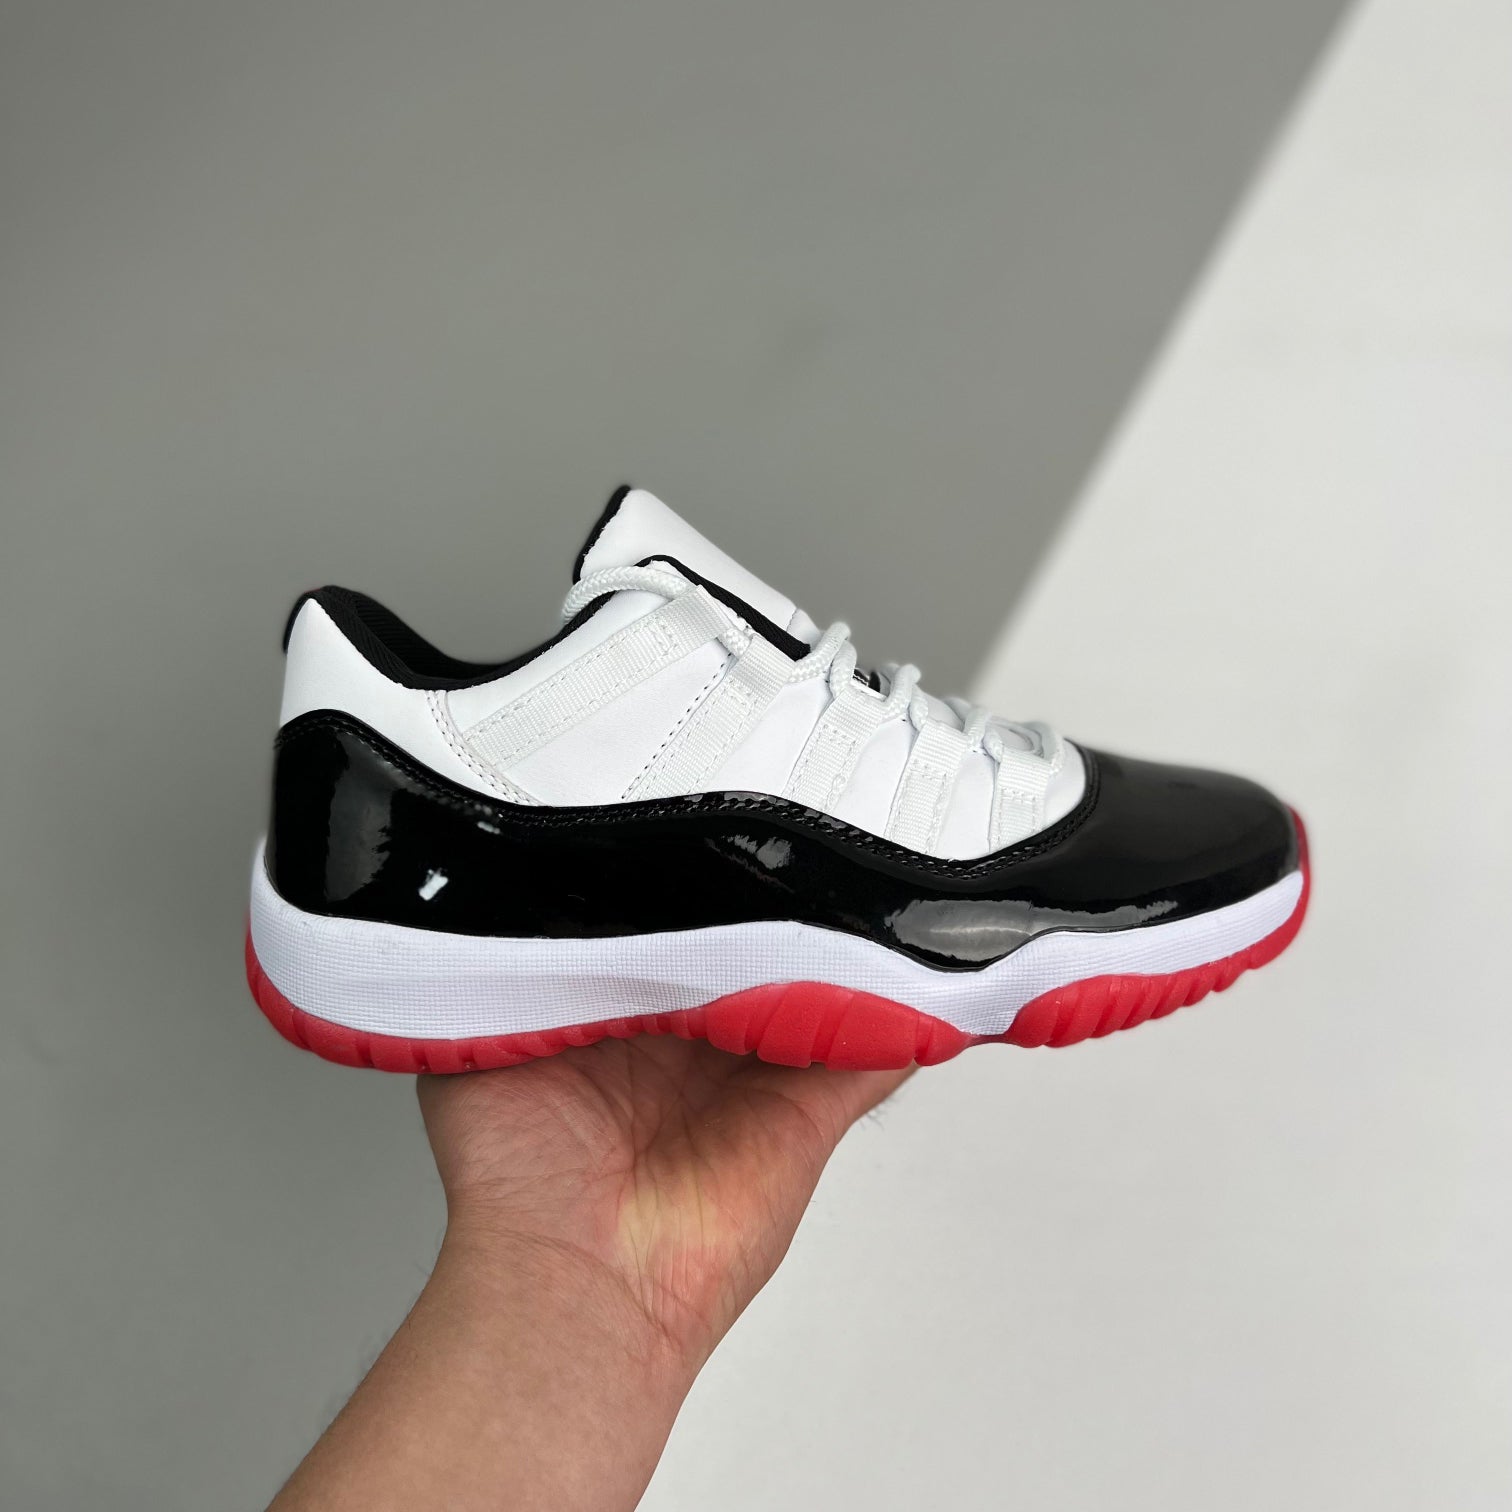 Nike Air Jordan 11 Retro Low Concord Bred Sneakers Shoes